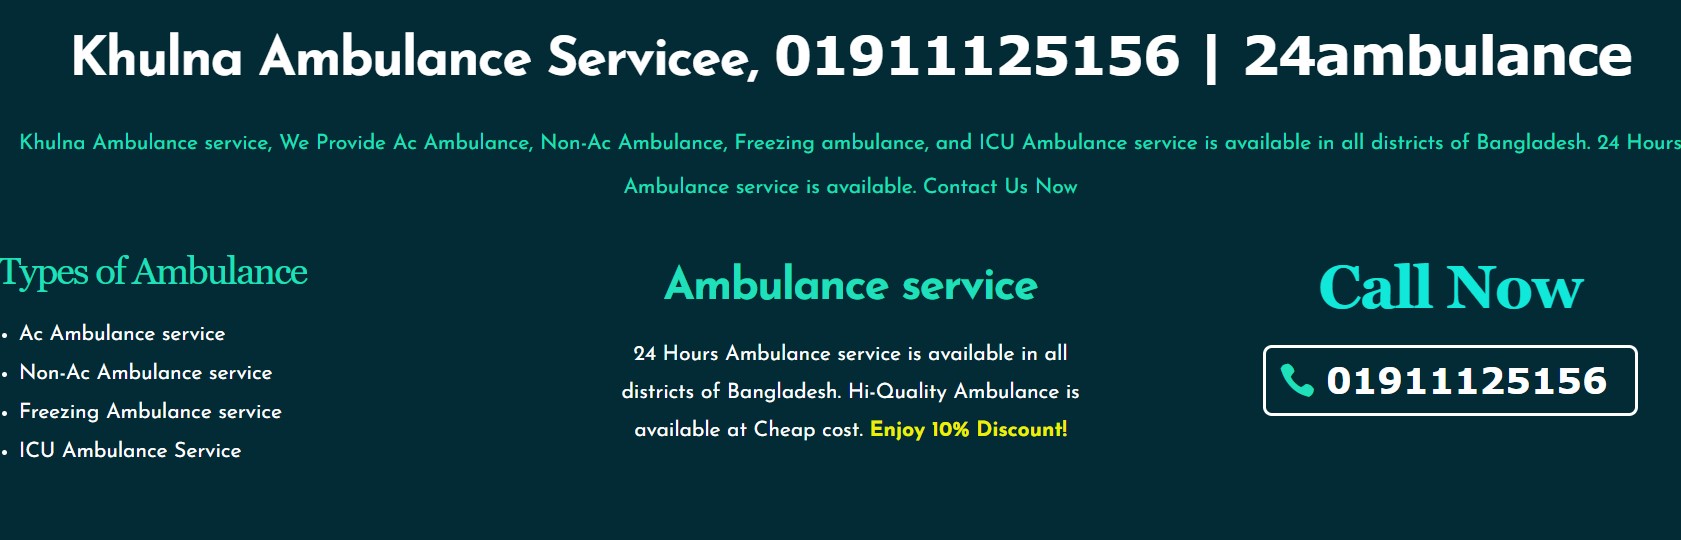 24 Ambulance Service